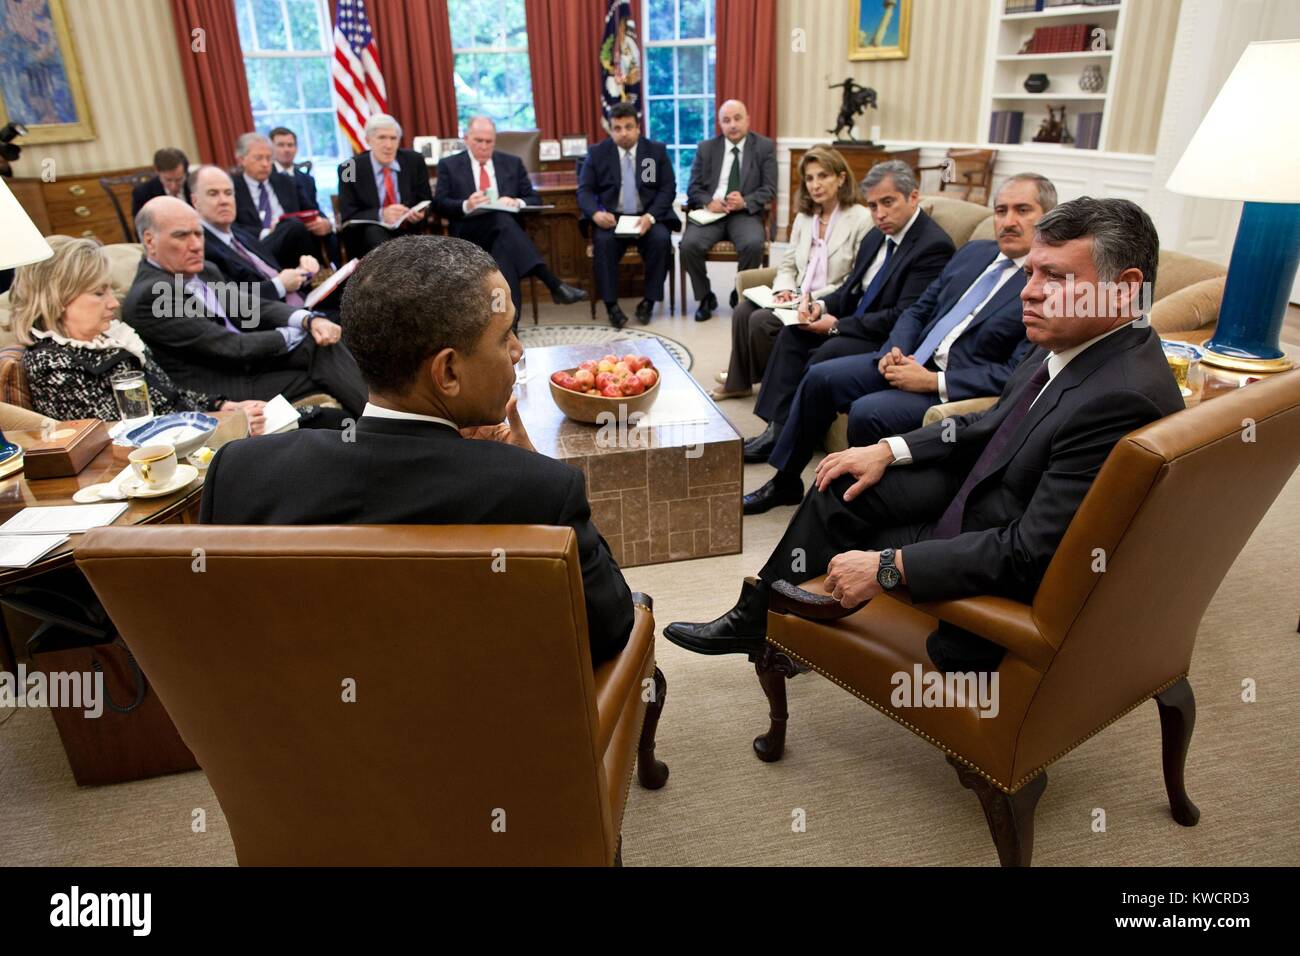 König Abdullah II. von Jordanien und die Mitglieder der jordanische Delegation im Oval Office. Auf der linken Seite sind Sec. Hillary Clinton und Präsident Obama. Mai 17, 2011 (BSLOC 2015 3 183) Stockfoto